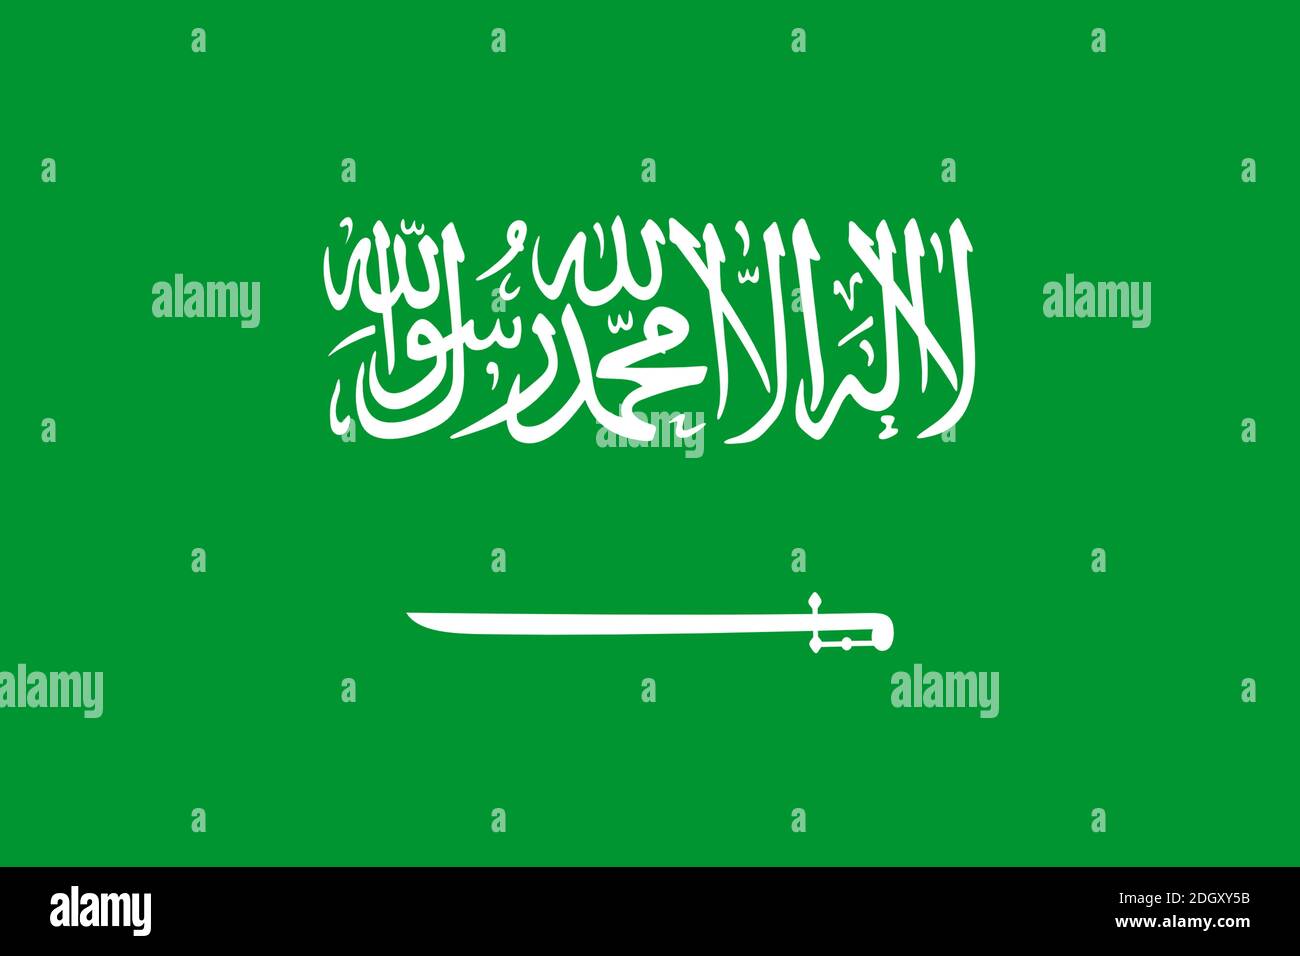 Flagge von Saudi Arabien, Arabische Halbinsel, Vorderasien Stock Photo